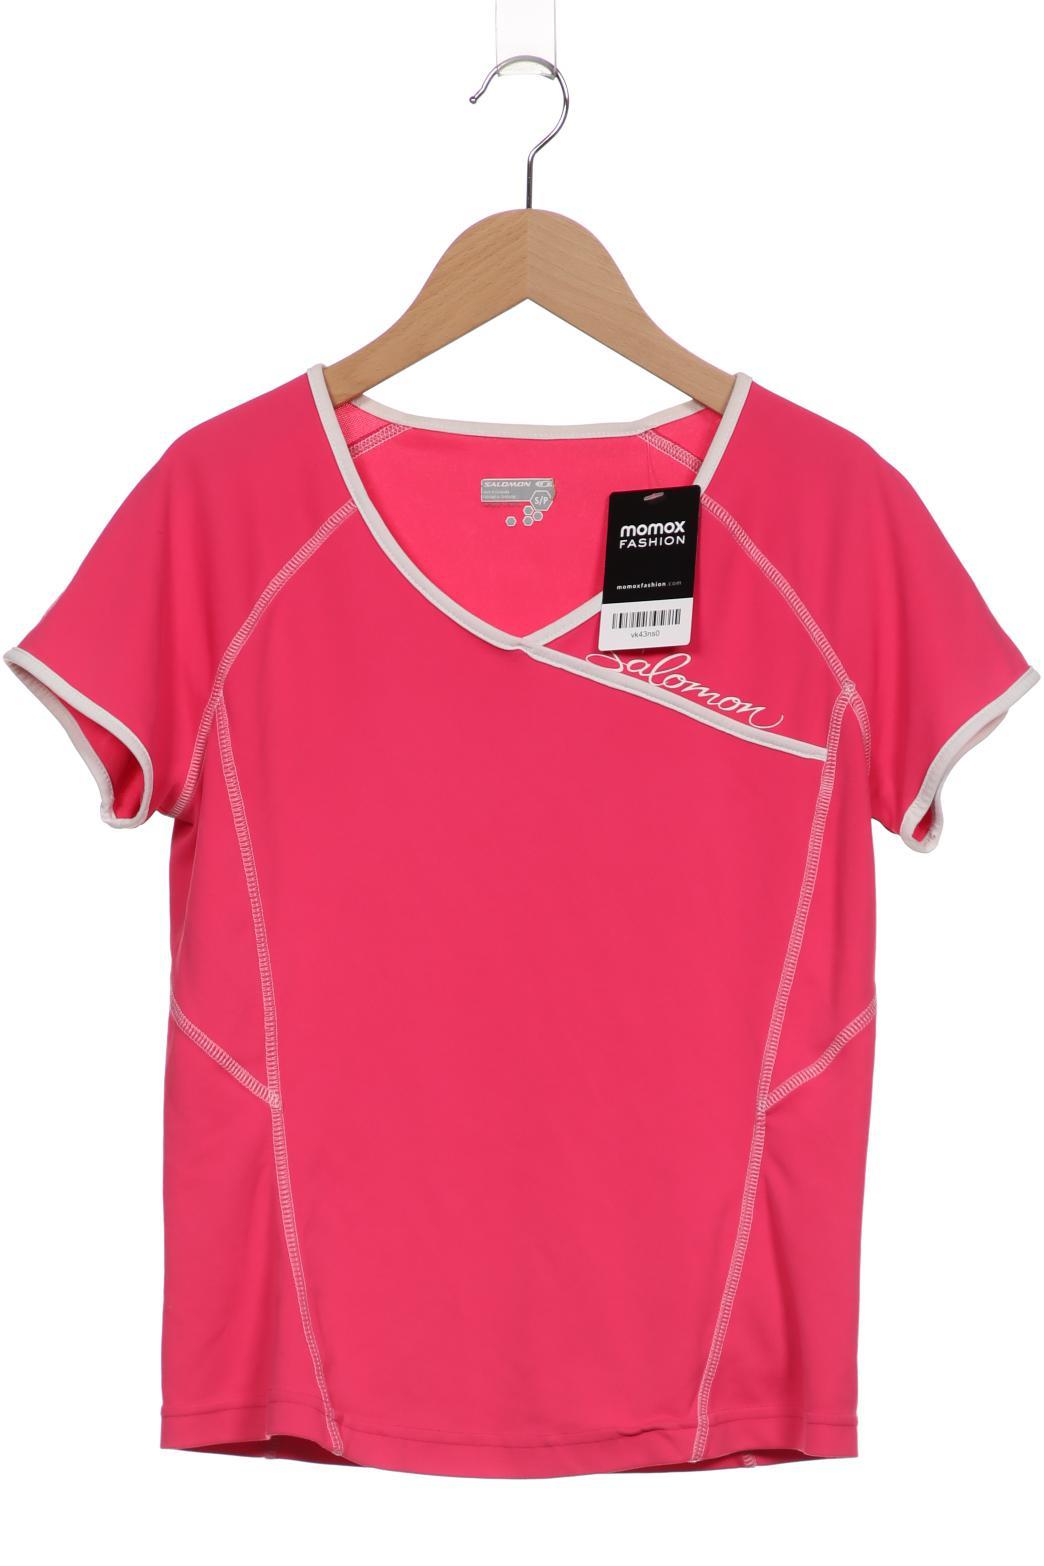 Salomon Damen T-Shirt, pink, Gr. 36 von Salomon